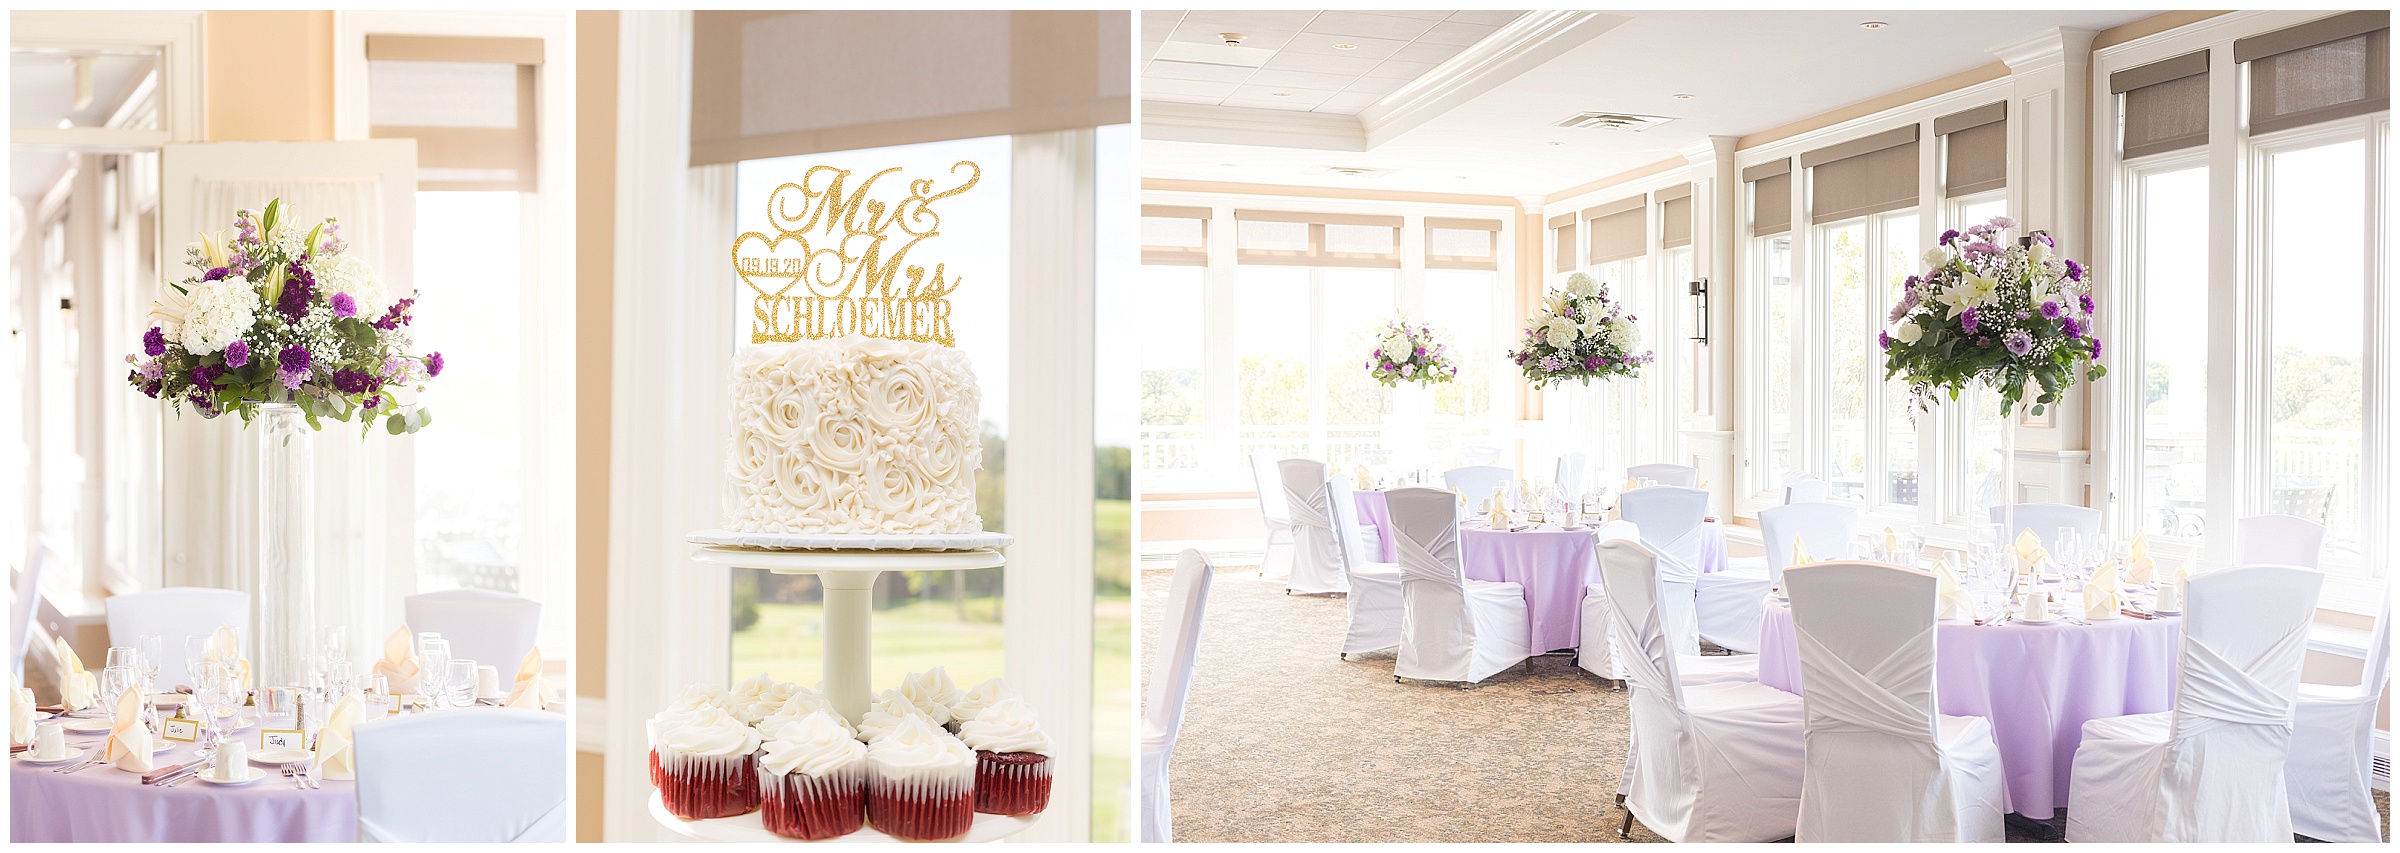 Interior Davenport Country Club; wedding reception